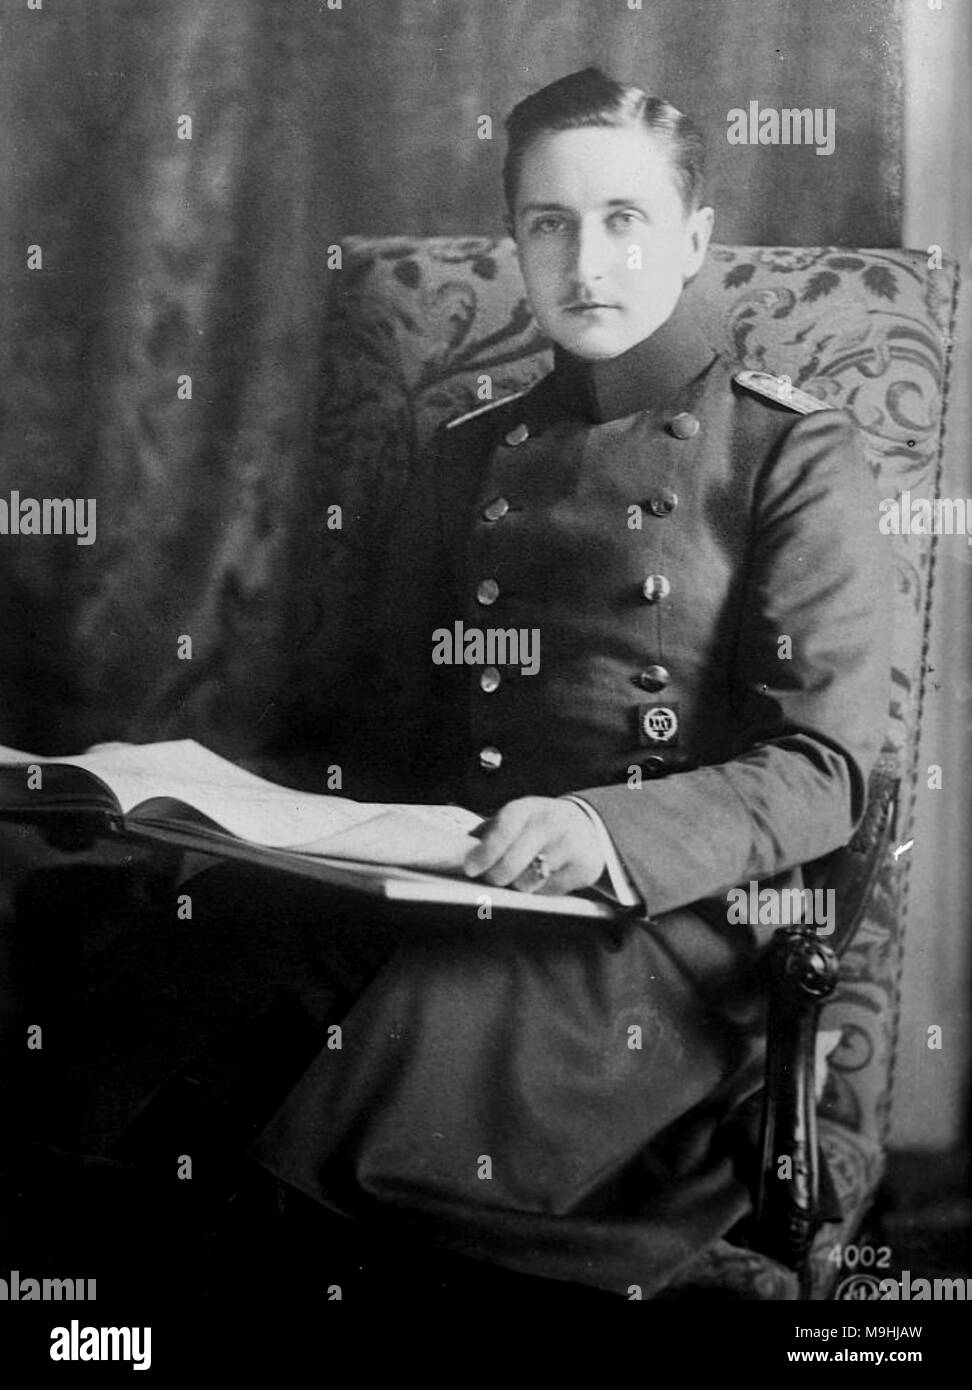 Prince August Wilhelm de Prusse, Prince August Wilhelm Heinrich Günther Viktor de Prusse (1887 - 1949), appelé "Auwi', était le quatrième fils de l'empereur Guillaume II, Empereur allemand par sa première femme, Augusta Victoria de Schleswig-Holstein. Banque D'Images